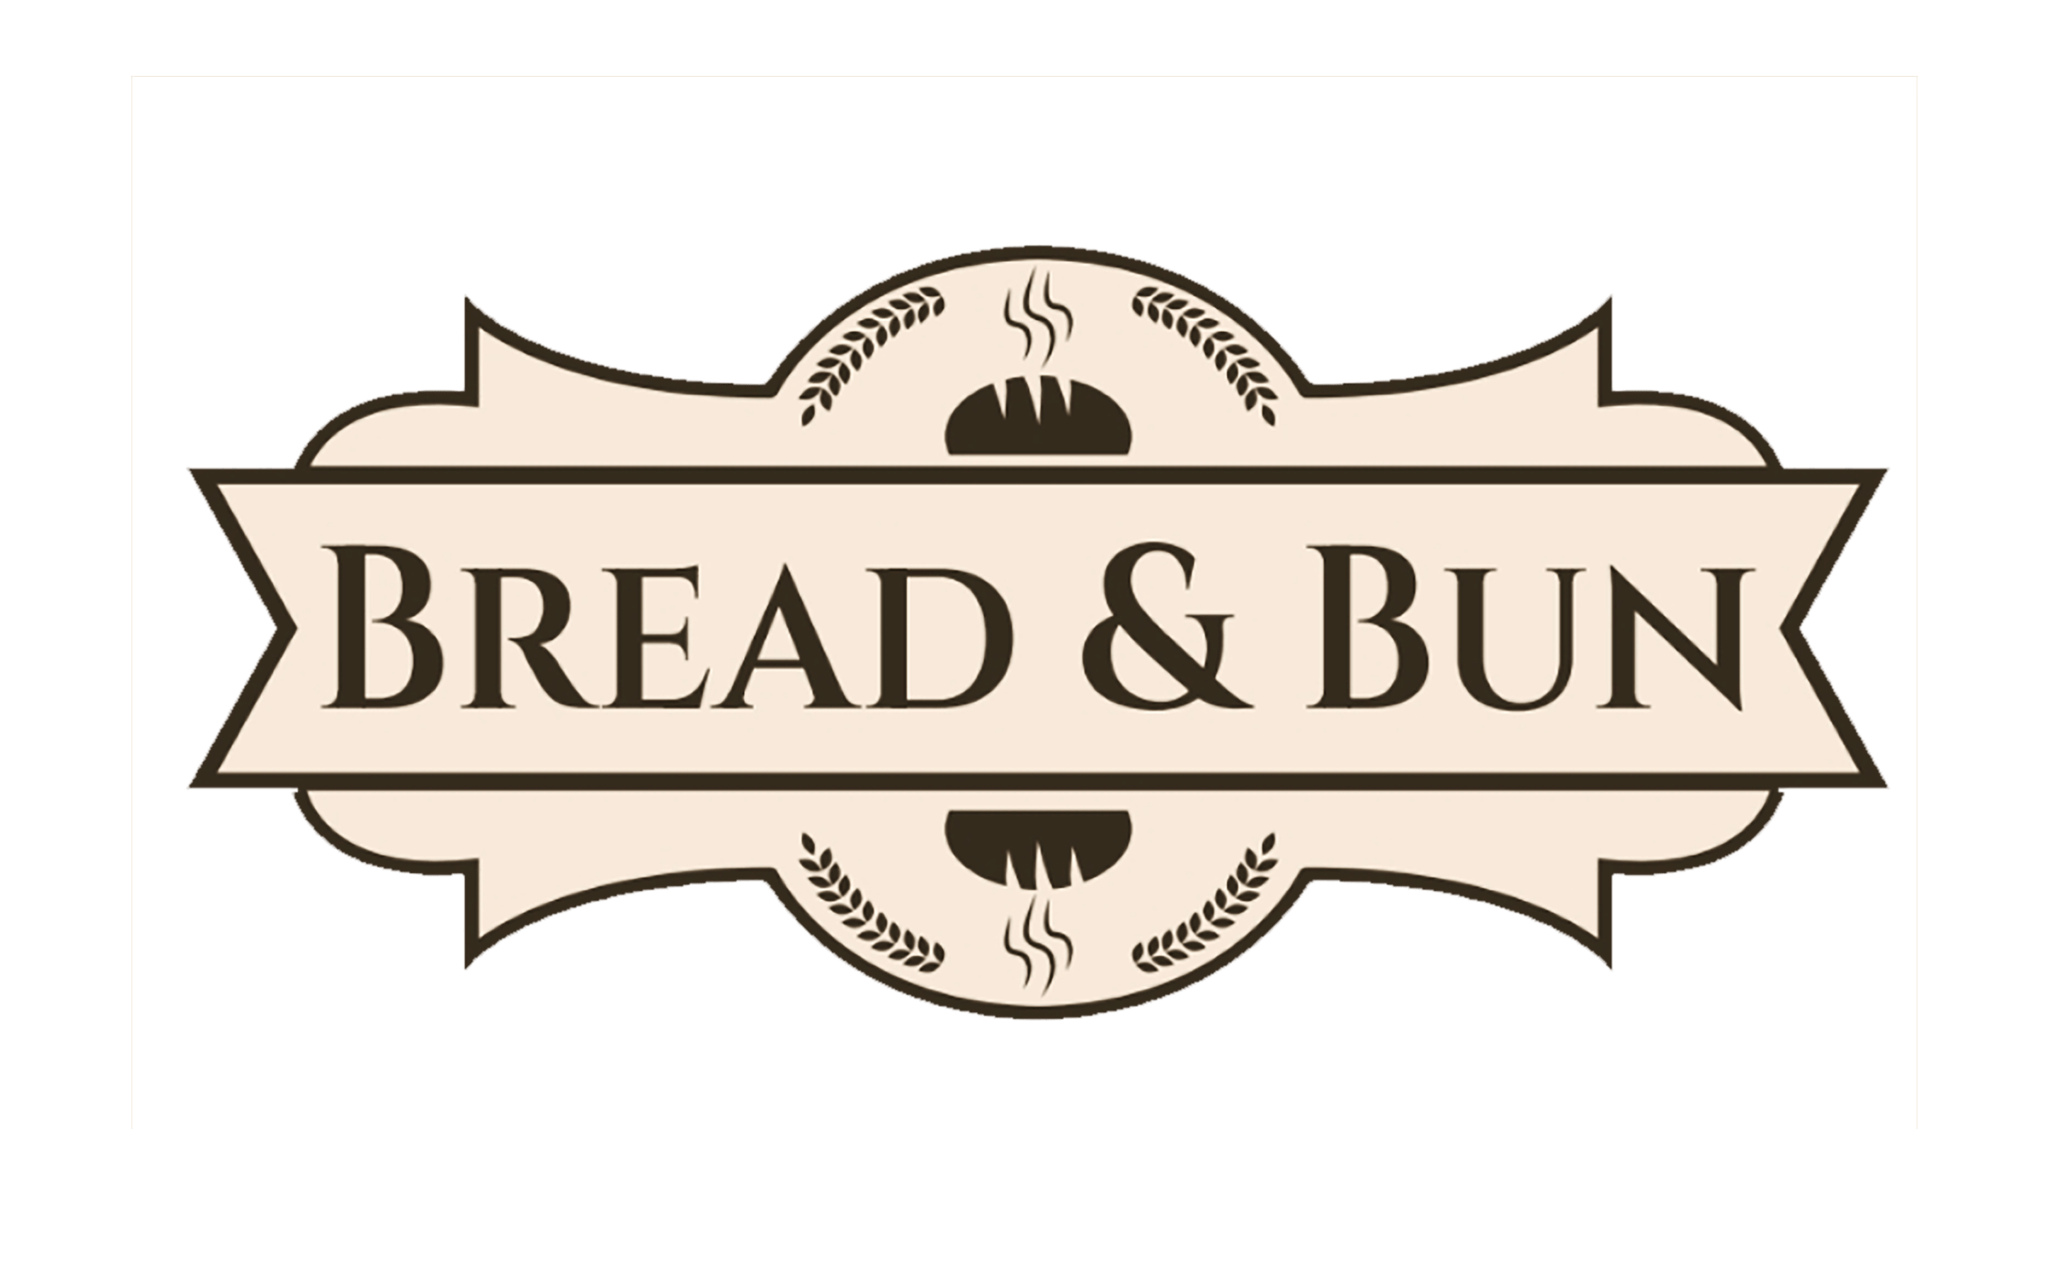 10.Bread & Bun